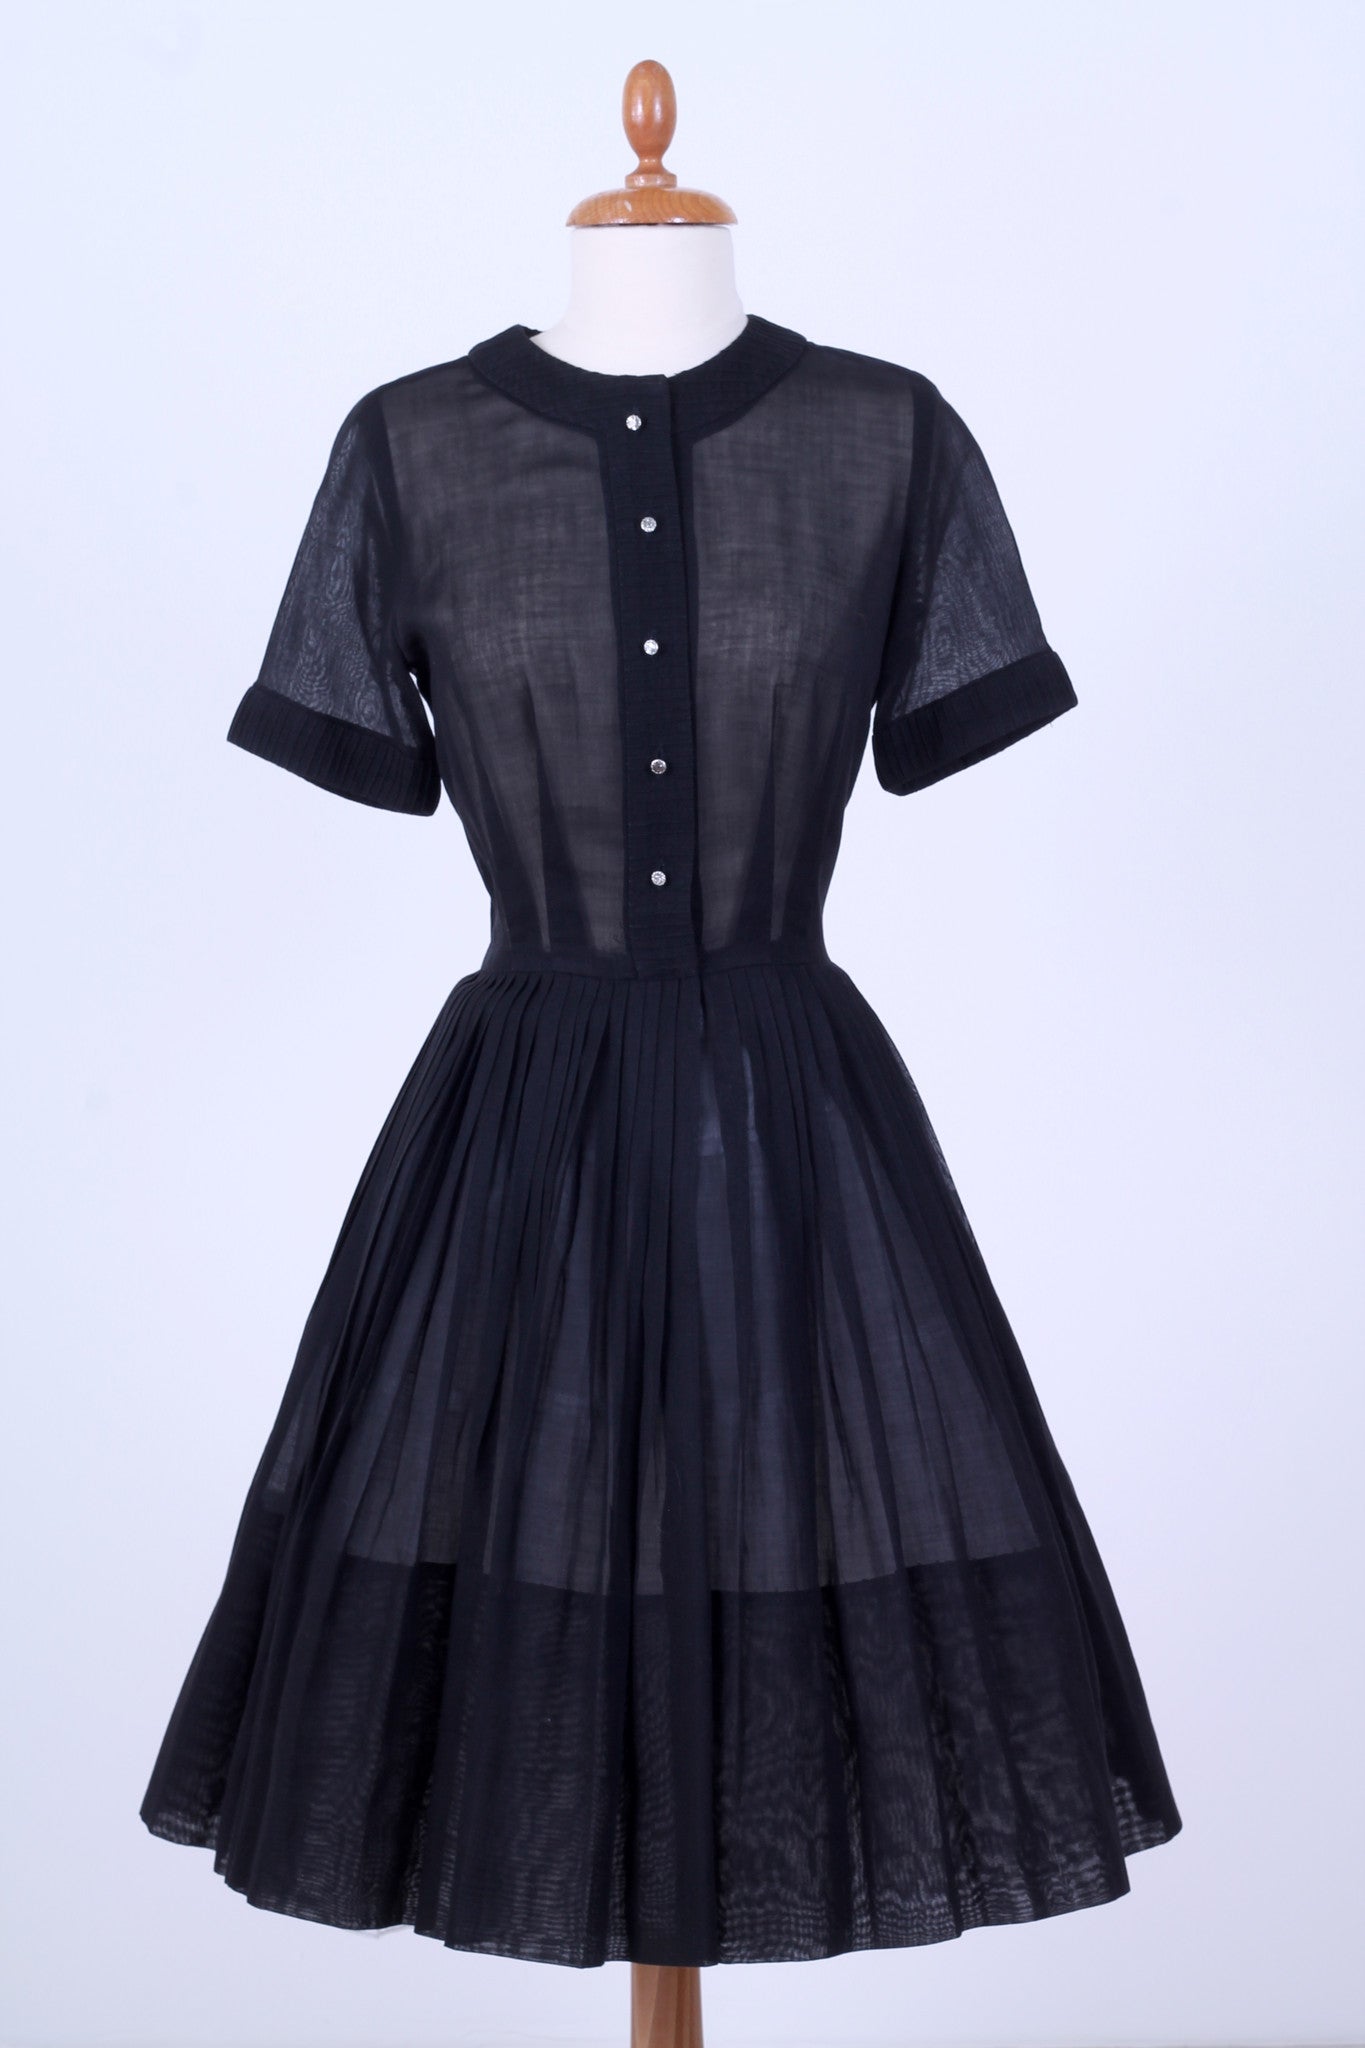 Solgt vintage tøj - Sort hverdagskjole i organza 1950. XS-S - solgt - Vintage Divine - 1